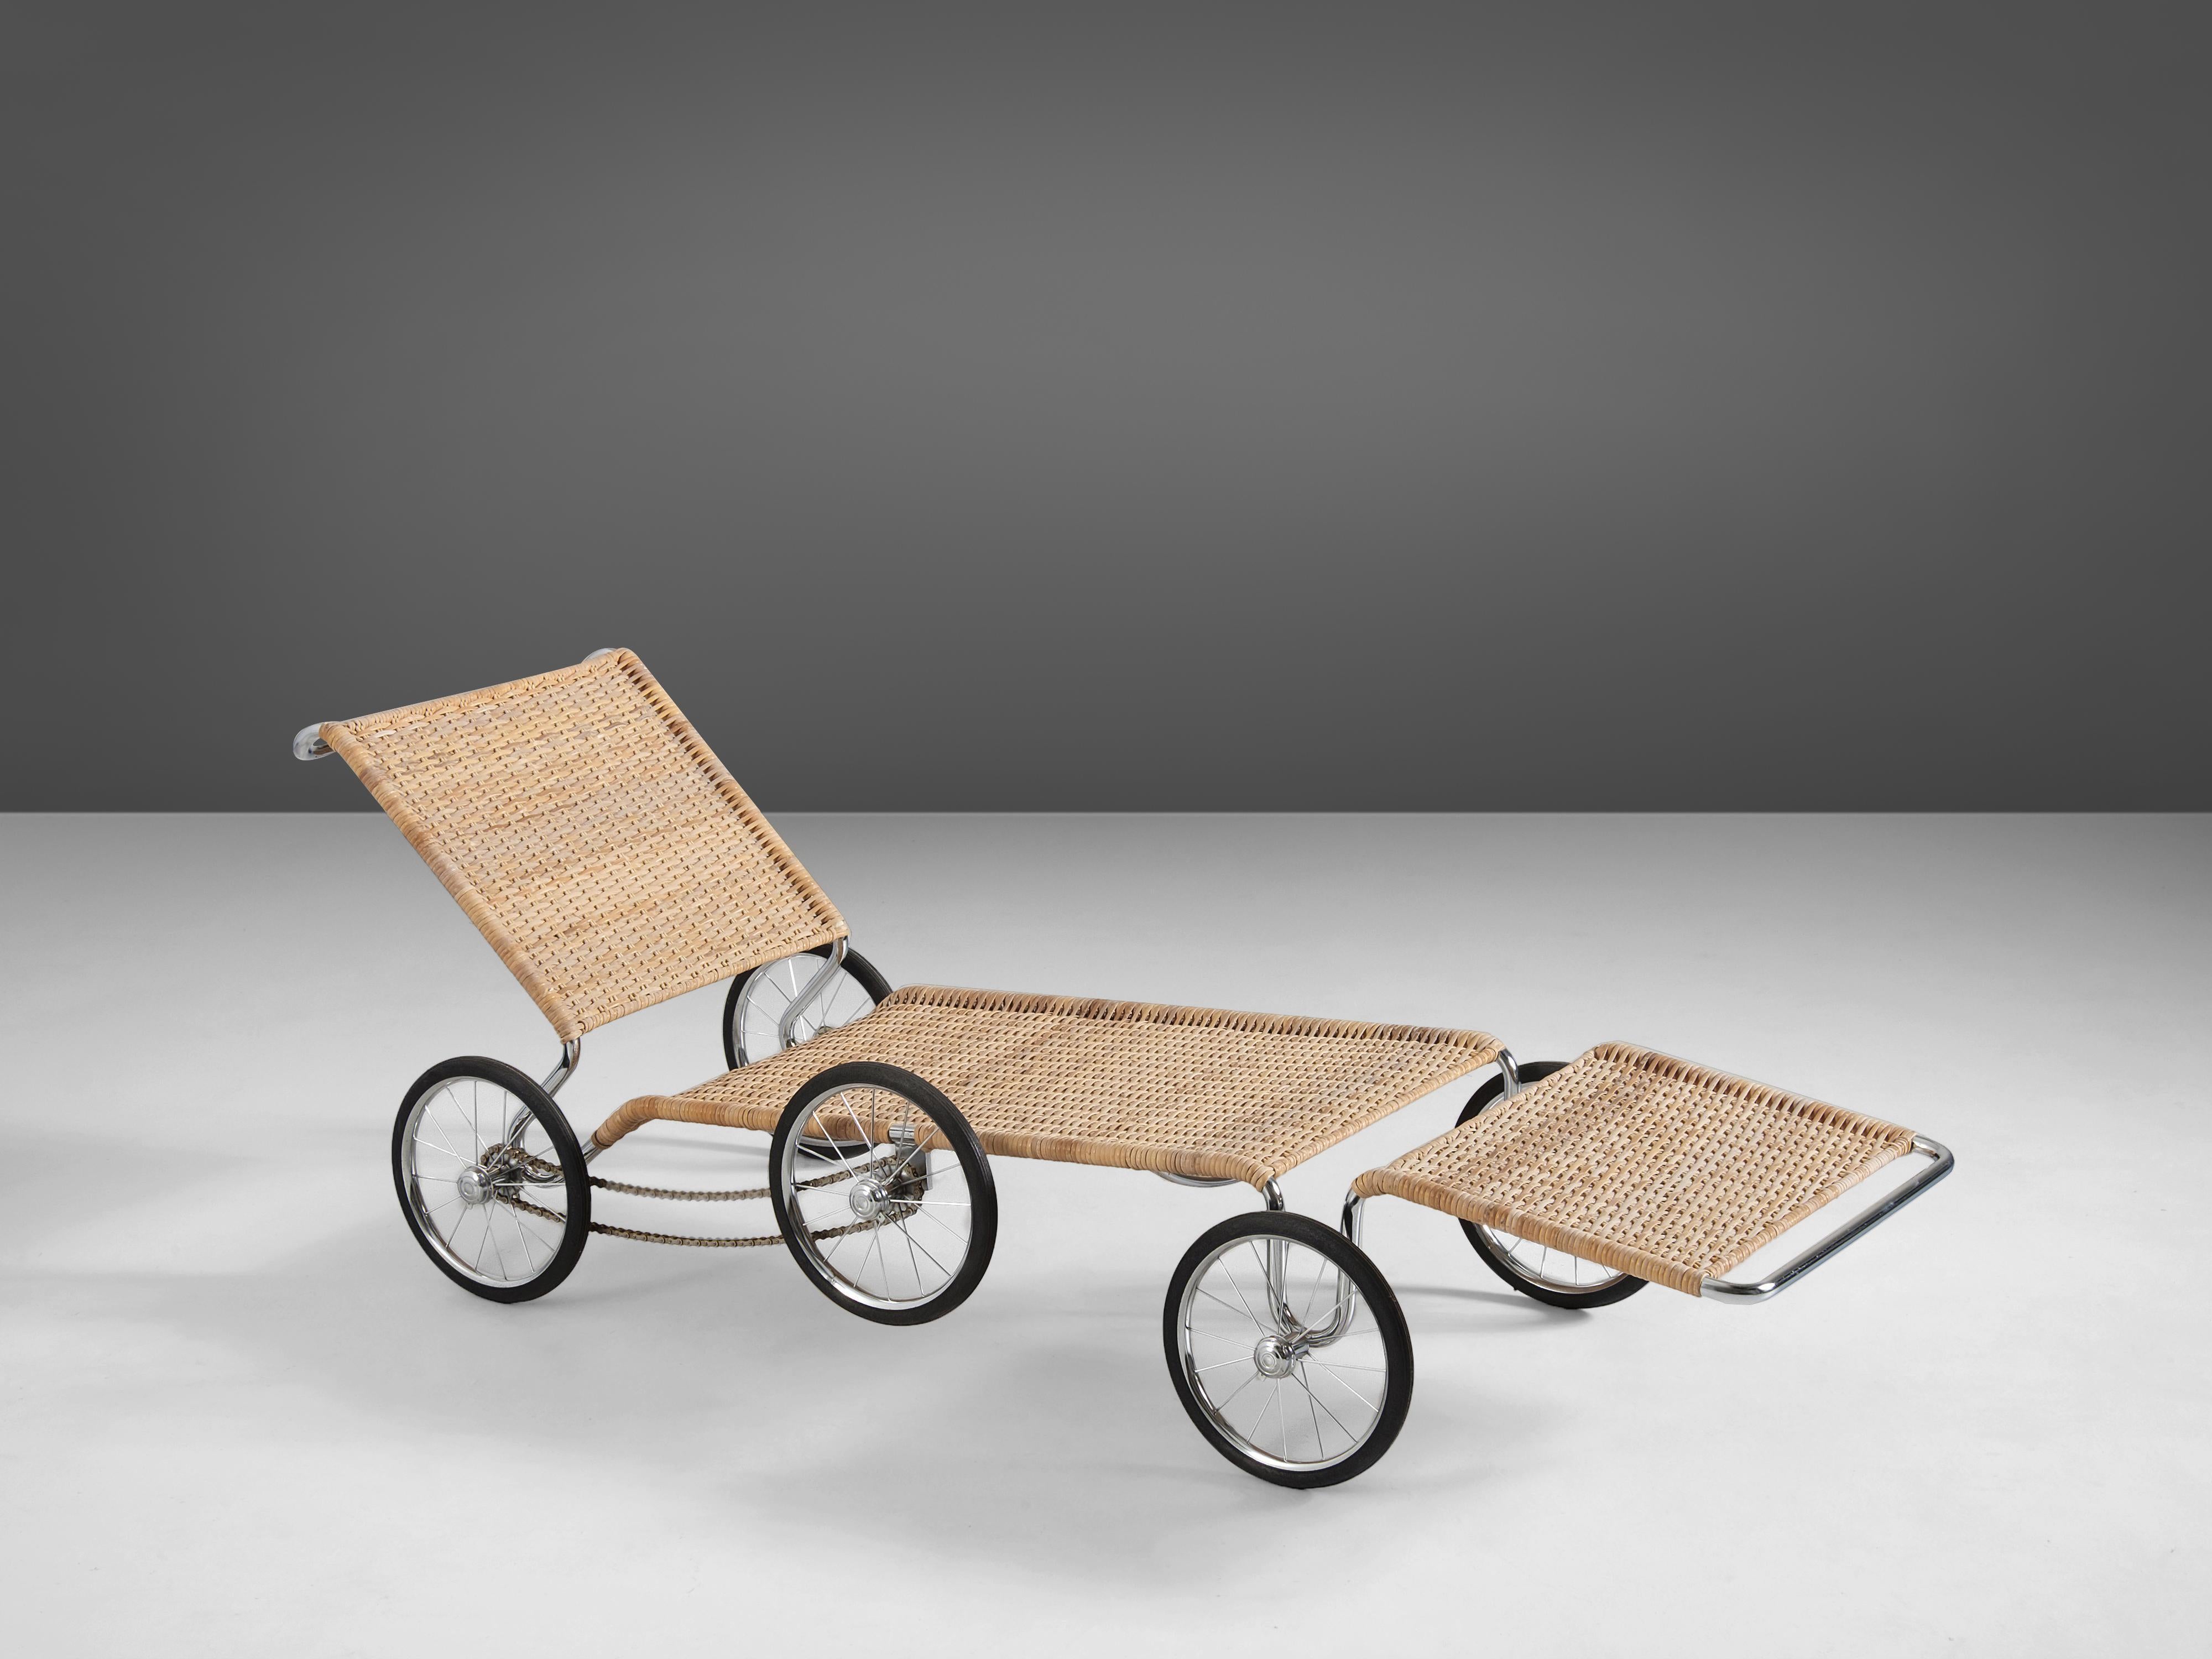 Marcel Breuer pour Tecta, 'The Mobile Manifesto' chaise longue, modèle F41-E, cannage, acier, caoutchouc, Allemagne, conçu vers 1928 et fabriqué en 1984.

Ce projet de l'architecte moderniste et créateur de meubles d'origine hongroise Marcel Breuer